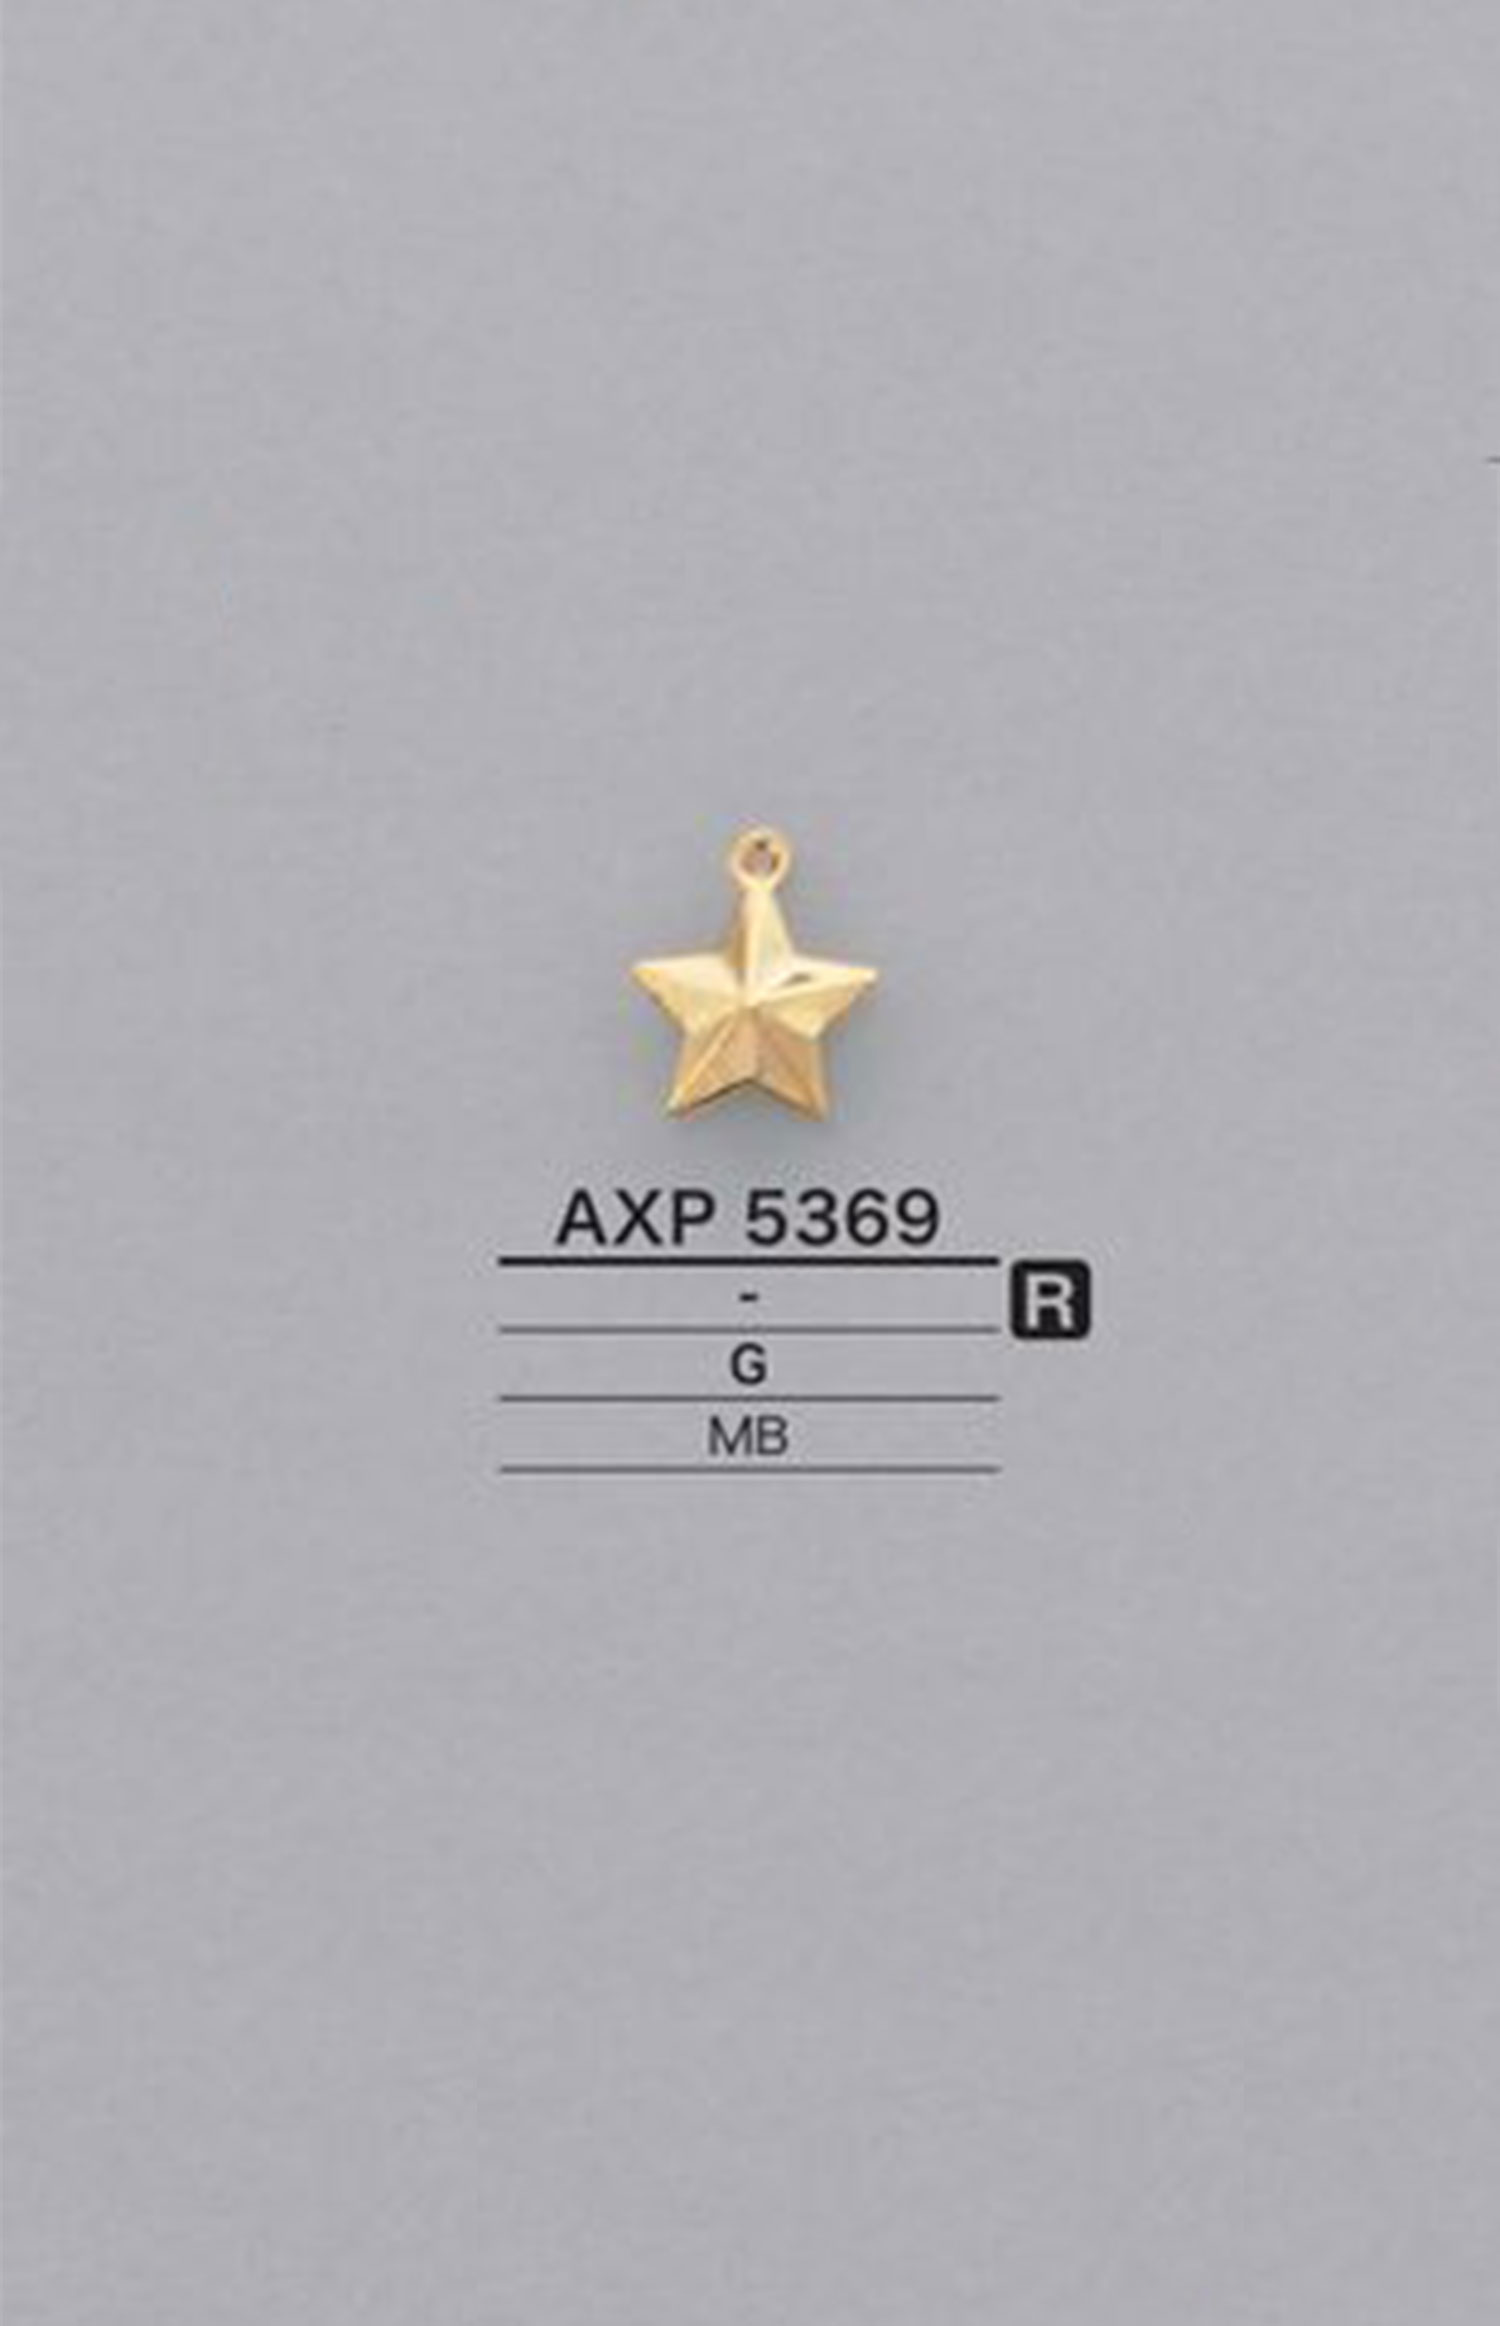 AXP5369 Parti Di Motivi A Forma Di Stella[Merci Varie E Altri] IRIS